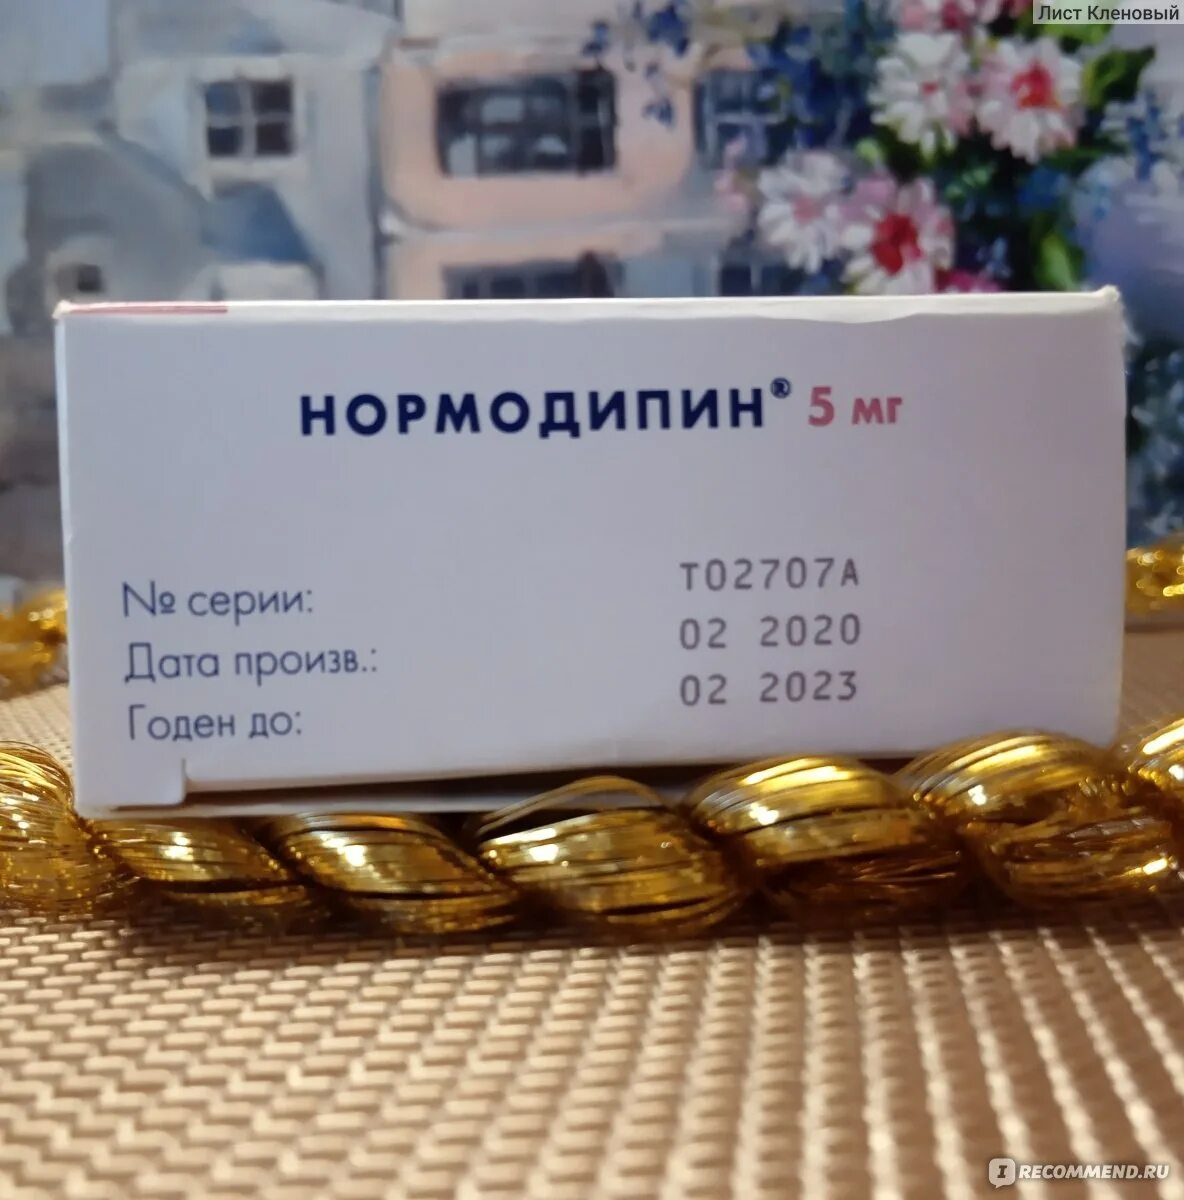 Нормодипин 10 аналоги. Нормодипин 5 мг. Таблетки от давления повышенного Нормодипин. Нормодипин фото таблетки. Нормодипин аналоги.